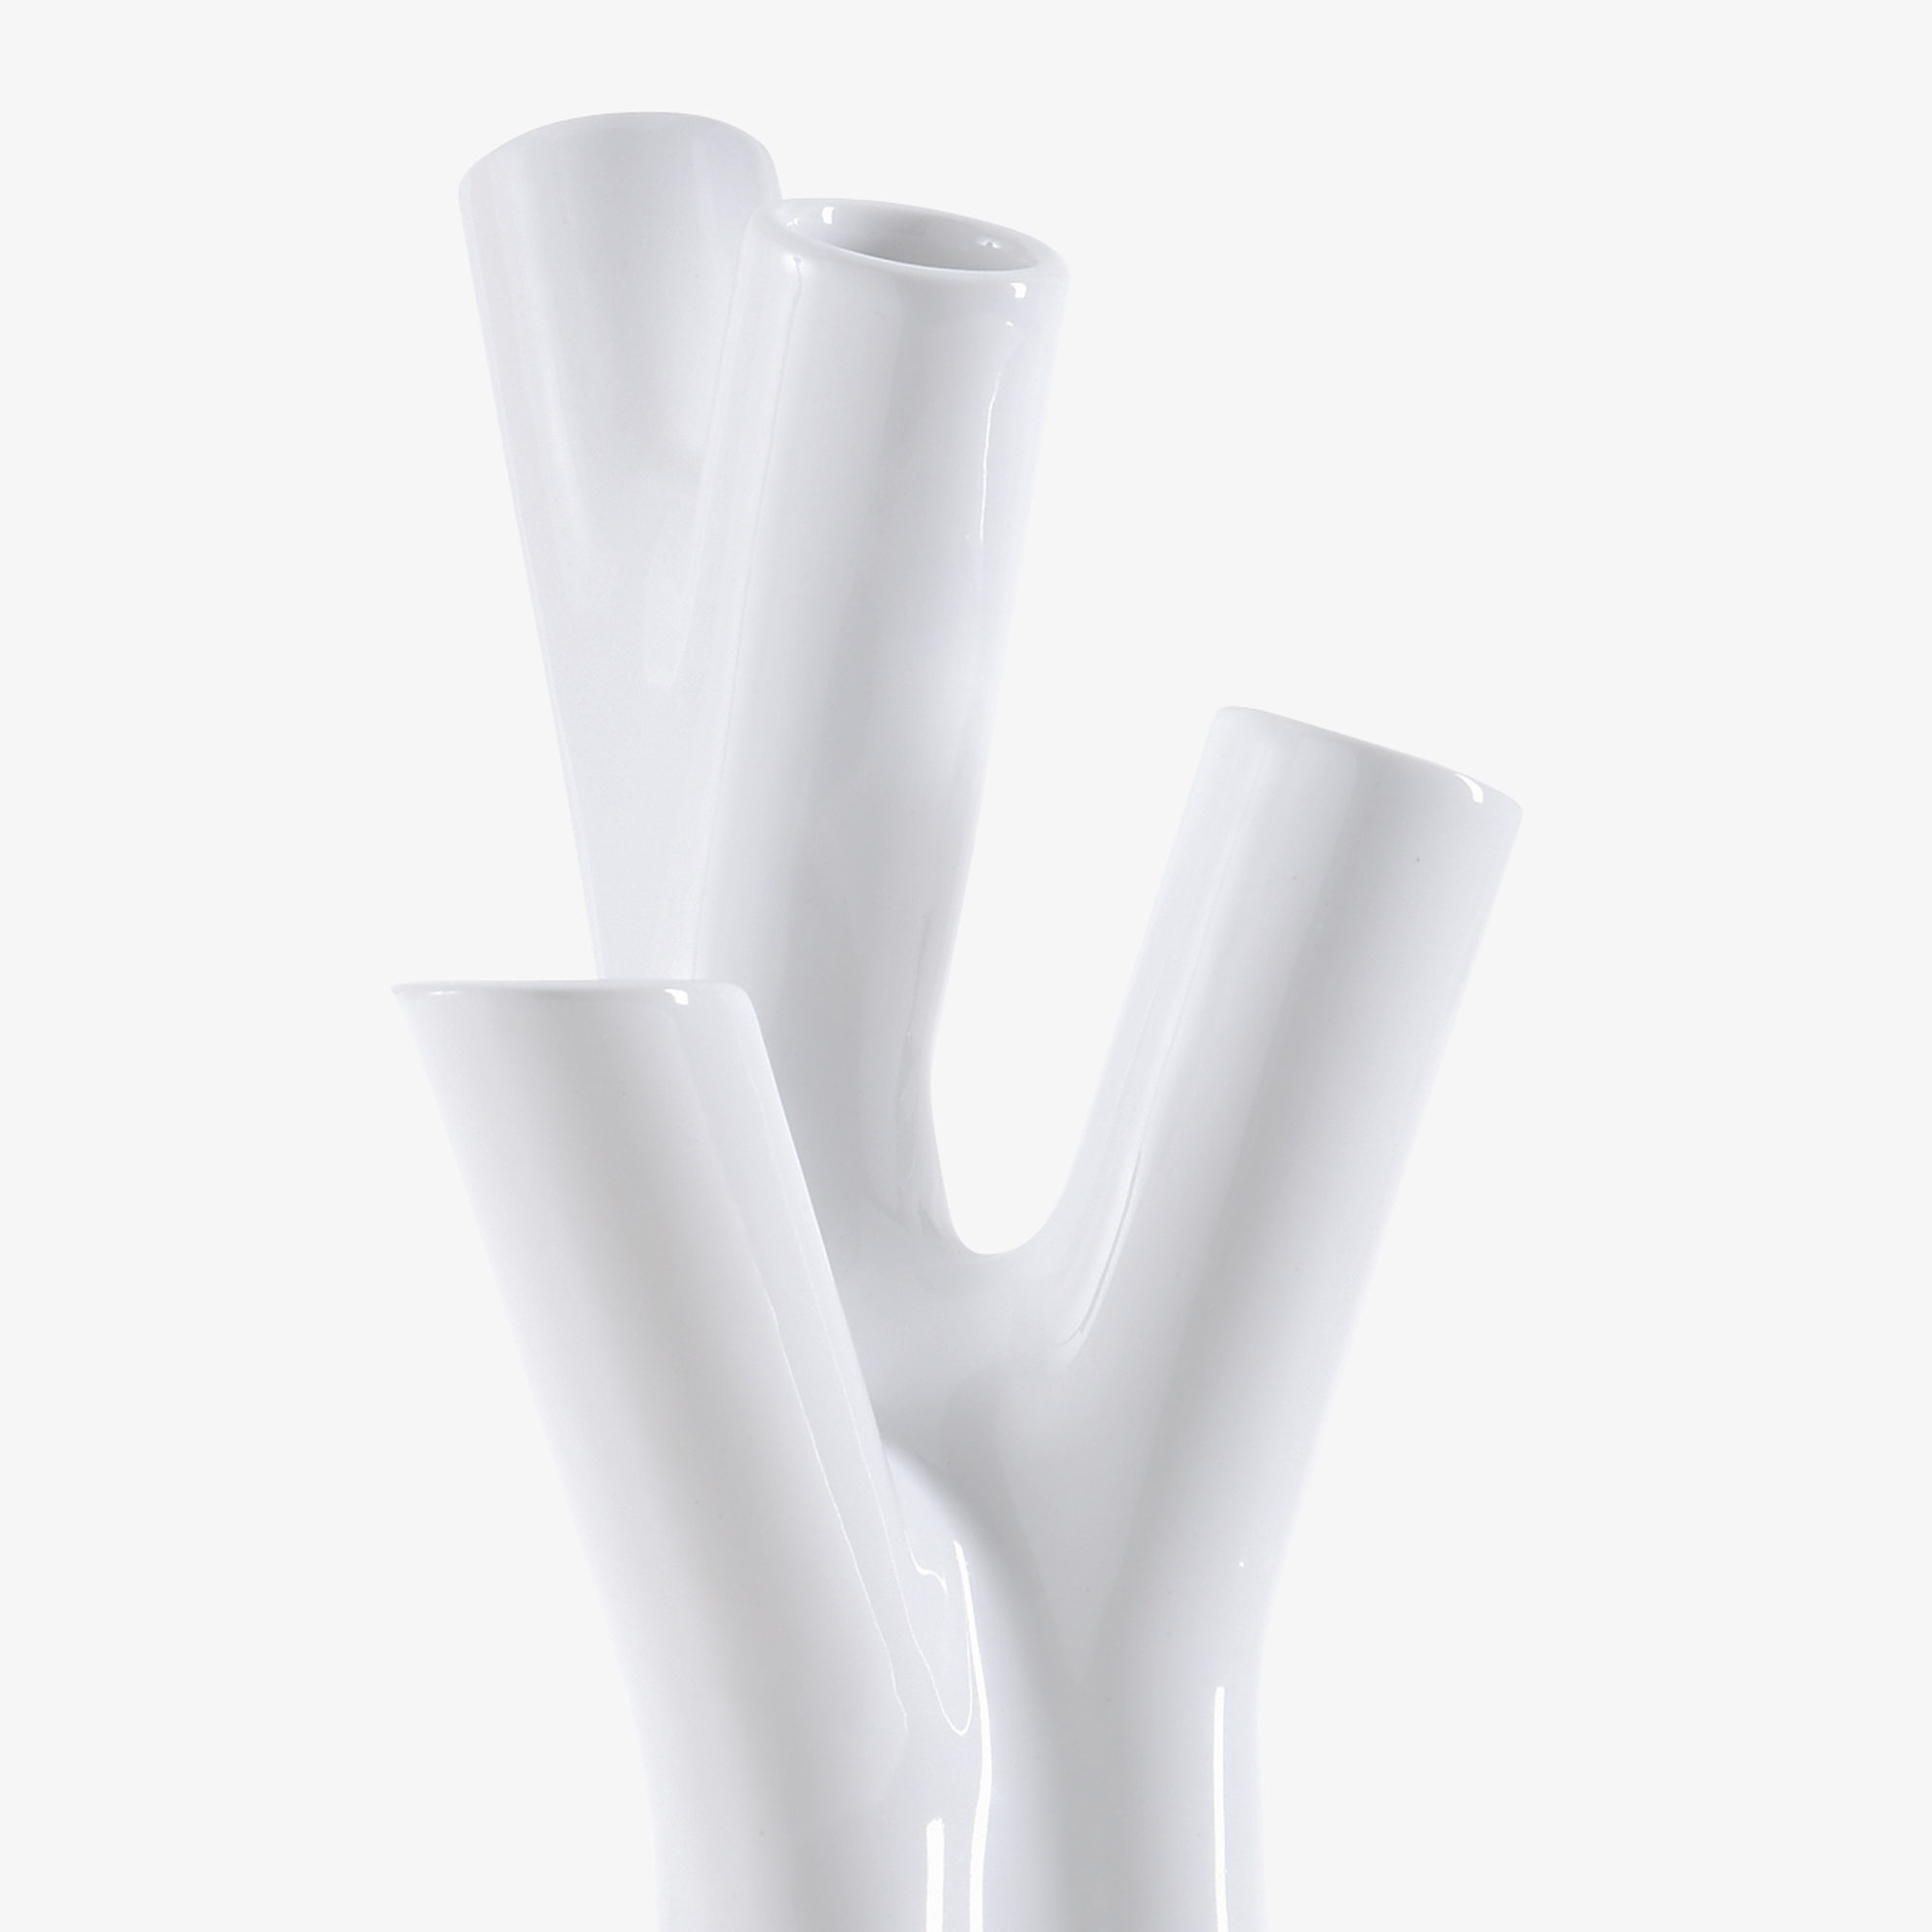 Image 花瓶 小型 白色 3